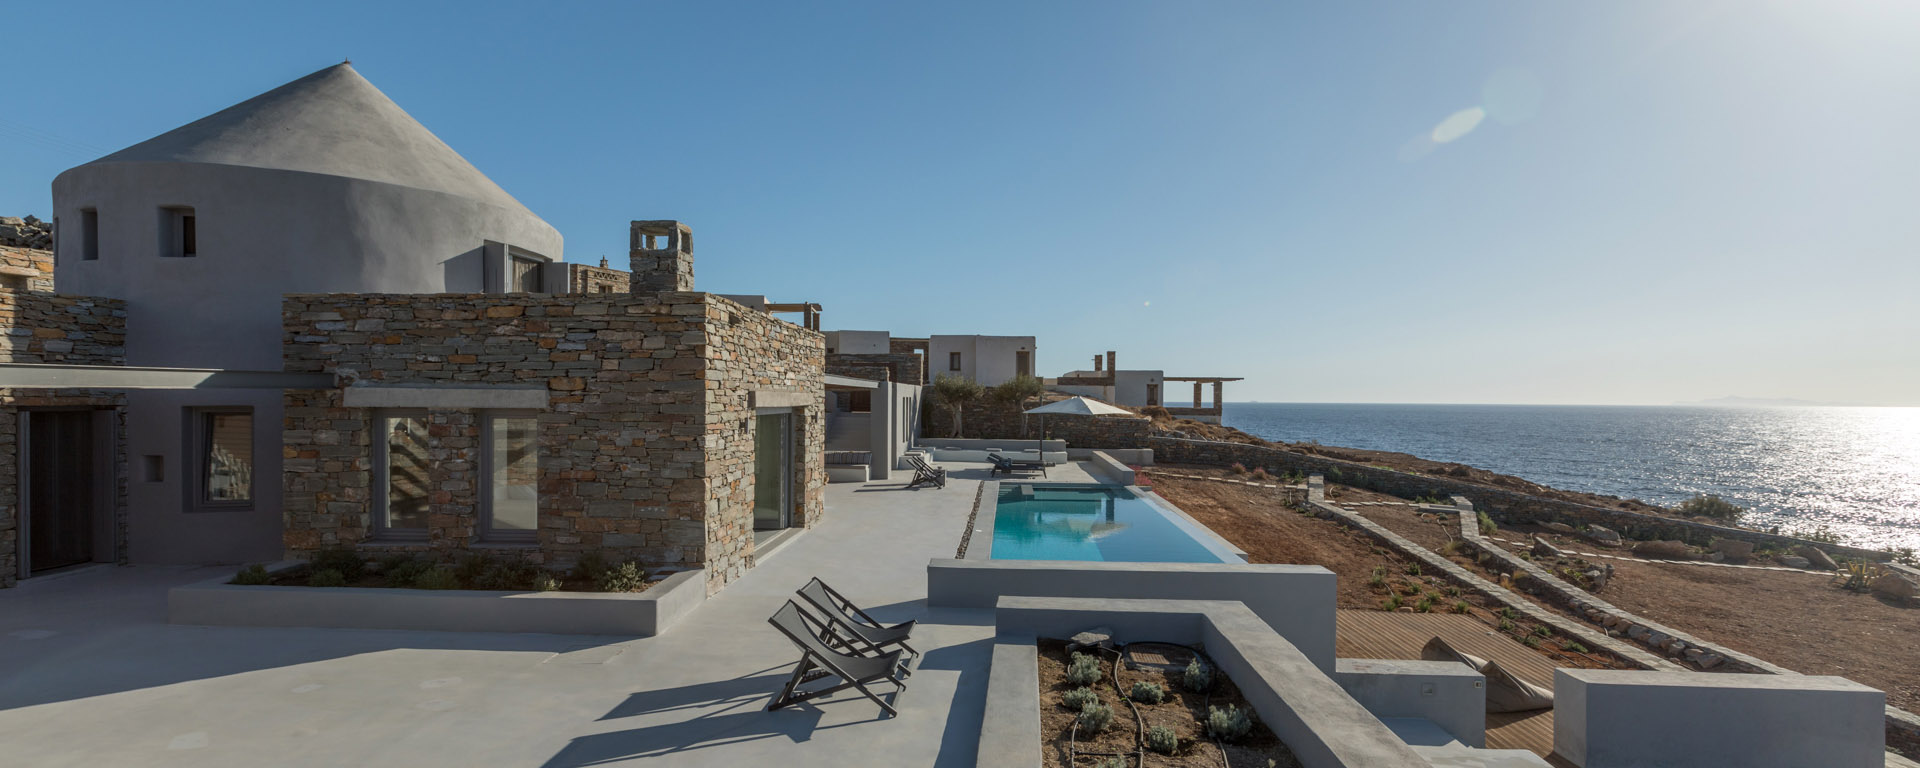 Luxus Ferienhaus Am Meer Griechenland Mieten